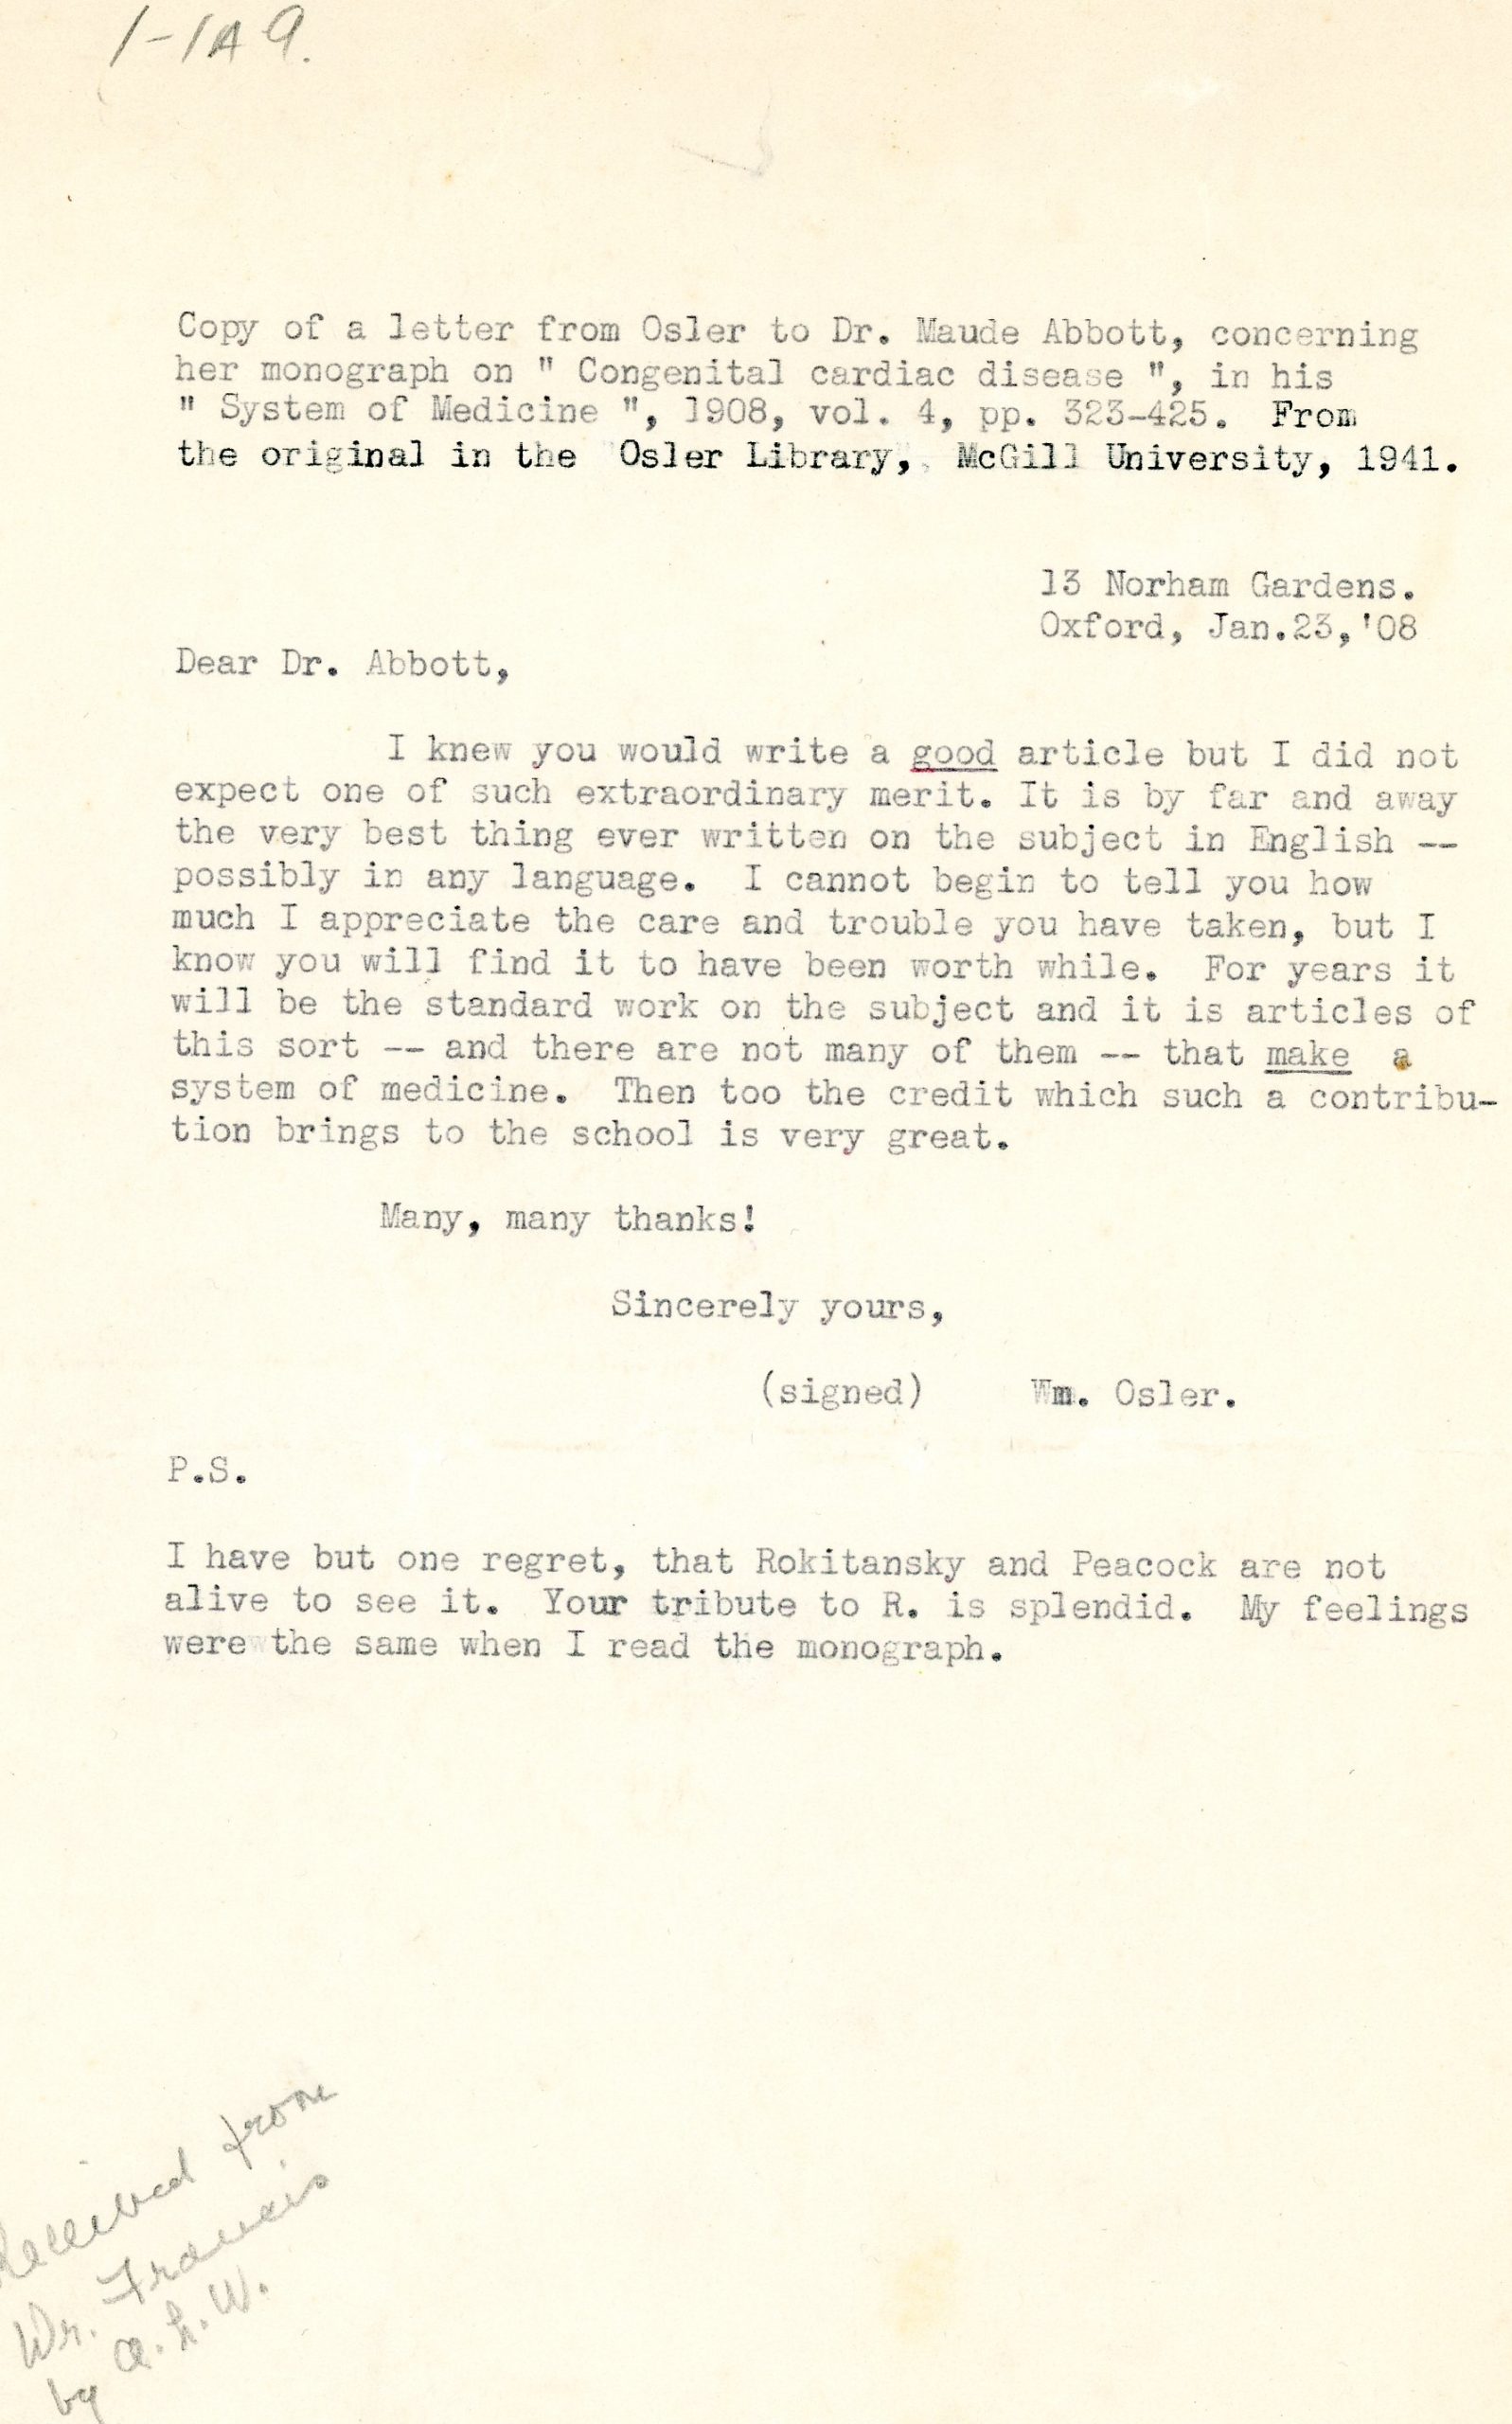 Copie d’une lettre du Dr. Osler à Dr. Maude Abbott datée du 23 janvier 1908, encre noire sur papier sépia. Le docteur la félicite pour la qualité d’un article qu’elle a rédigé.